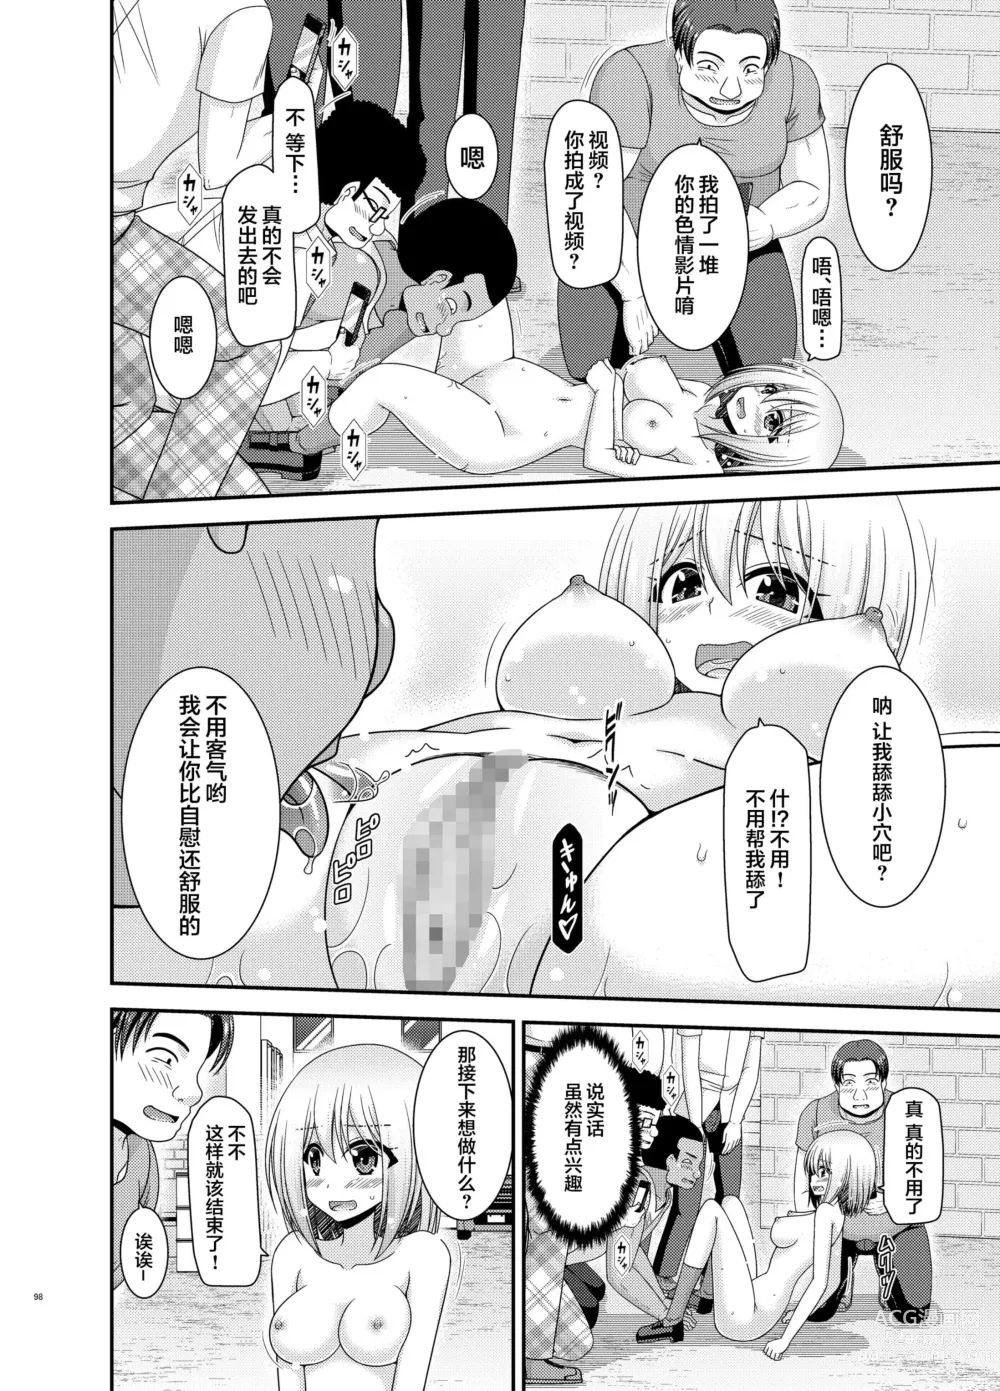 Page 95 of manga Nozokare Roshutsu Shoujo